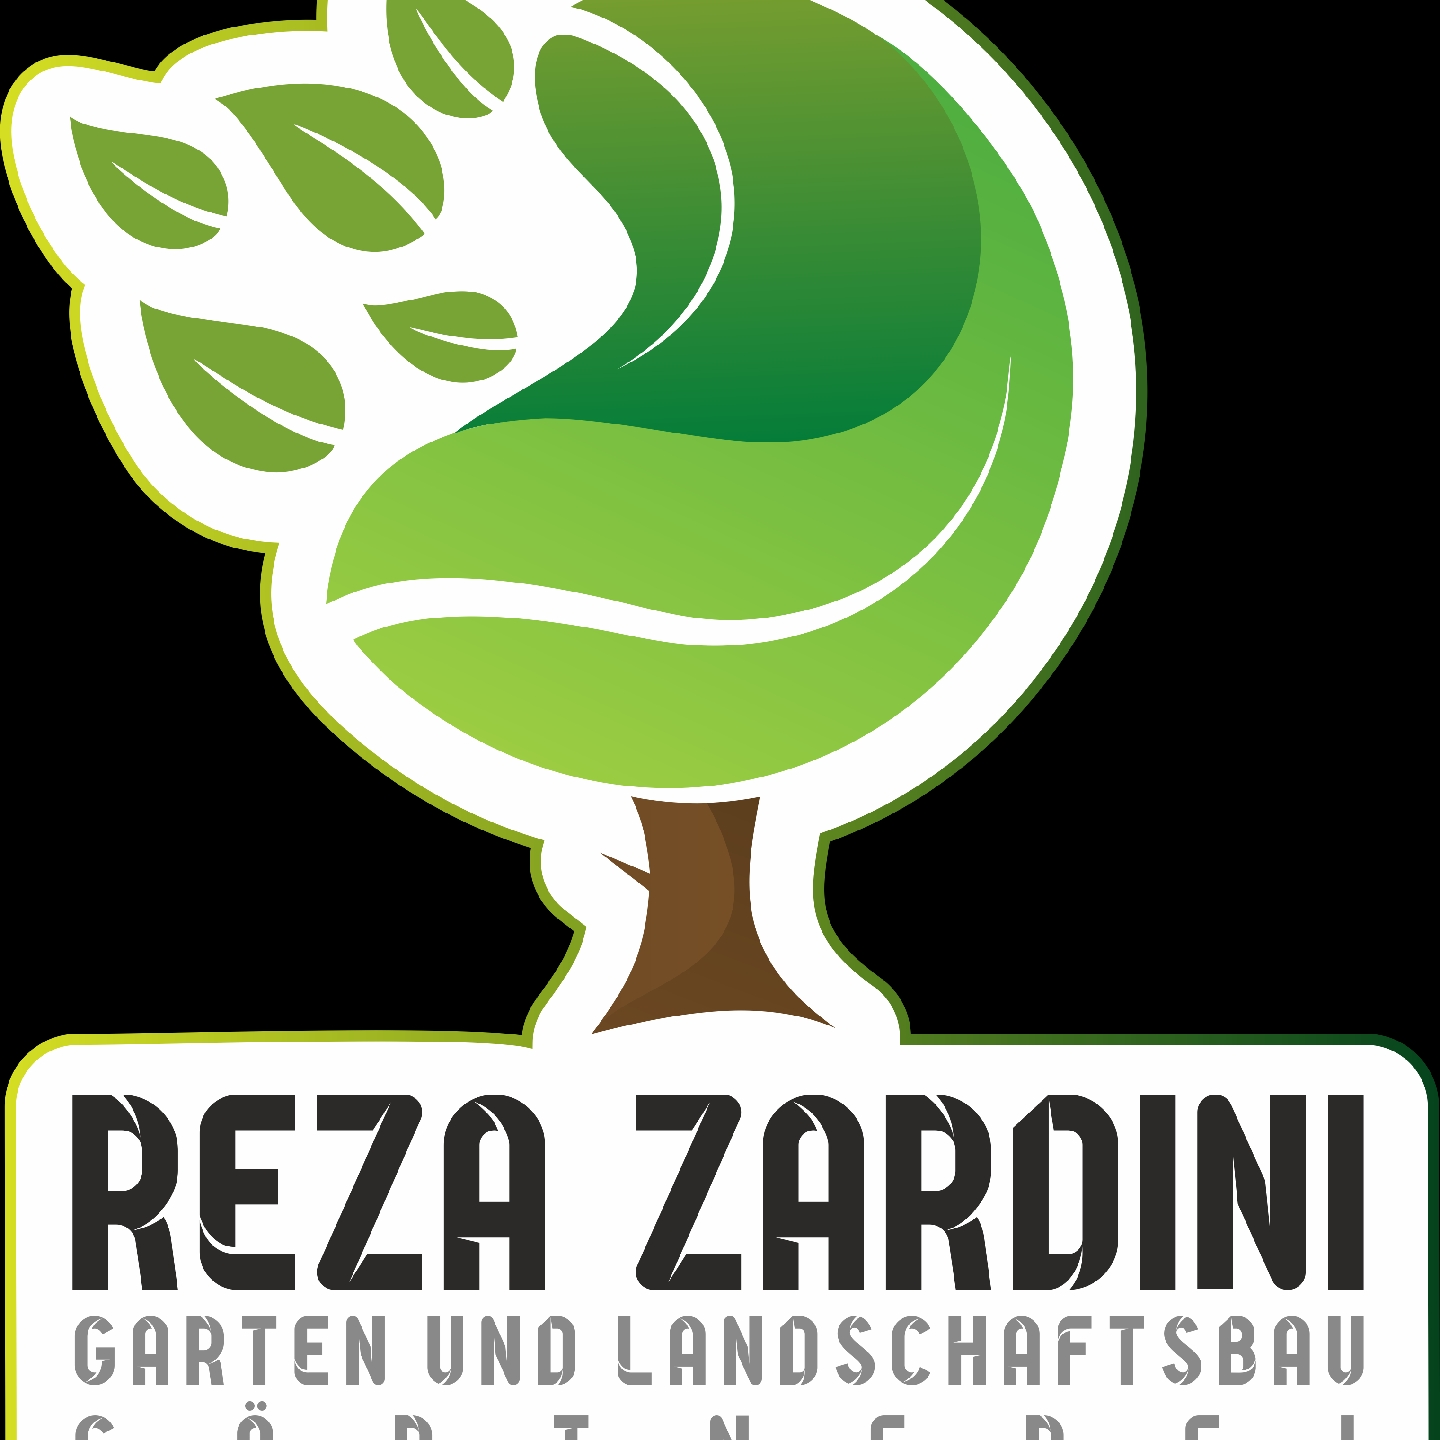 Galabau/Gärtnerei Reza Zardini logo